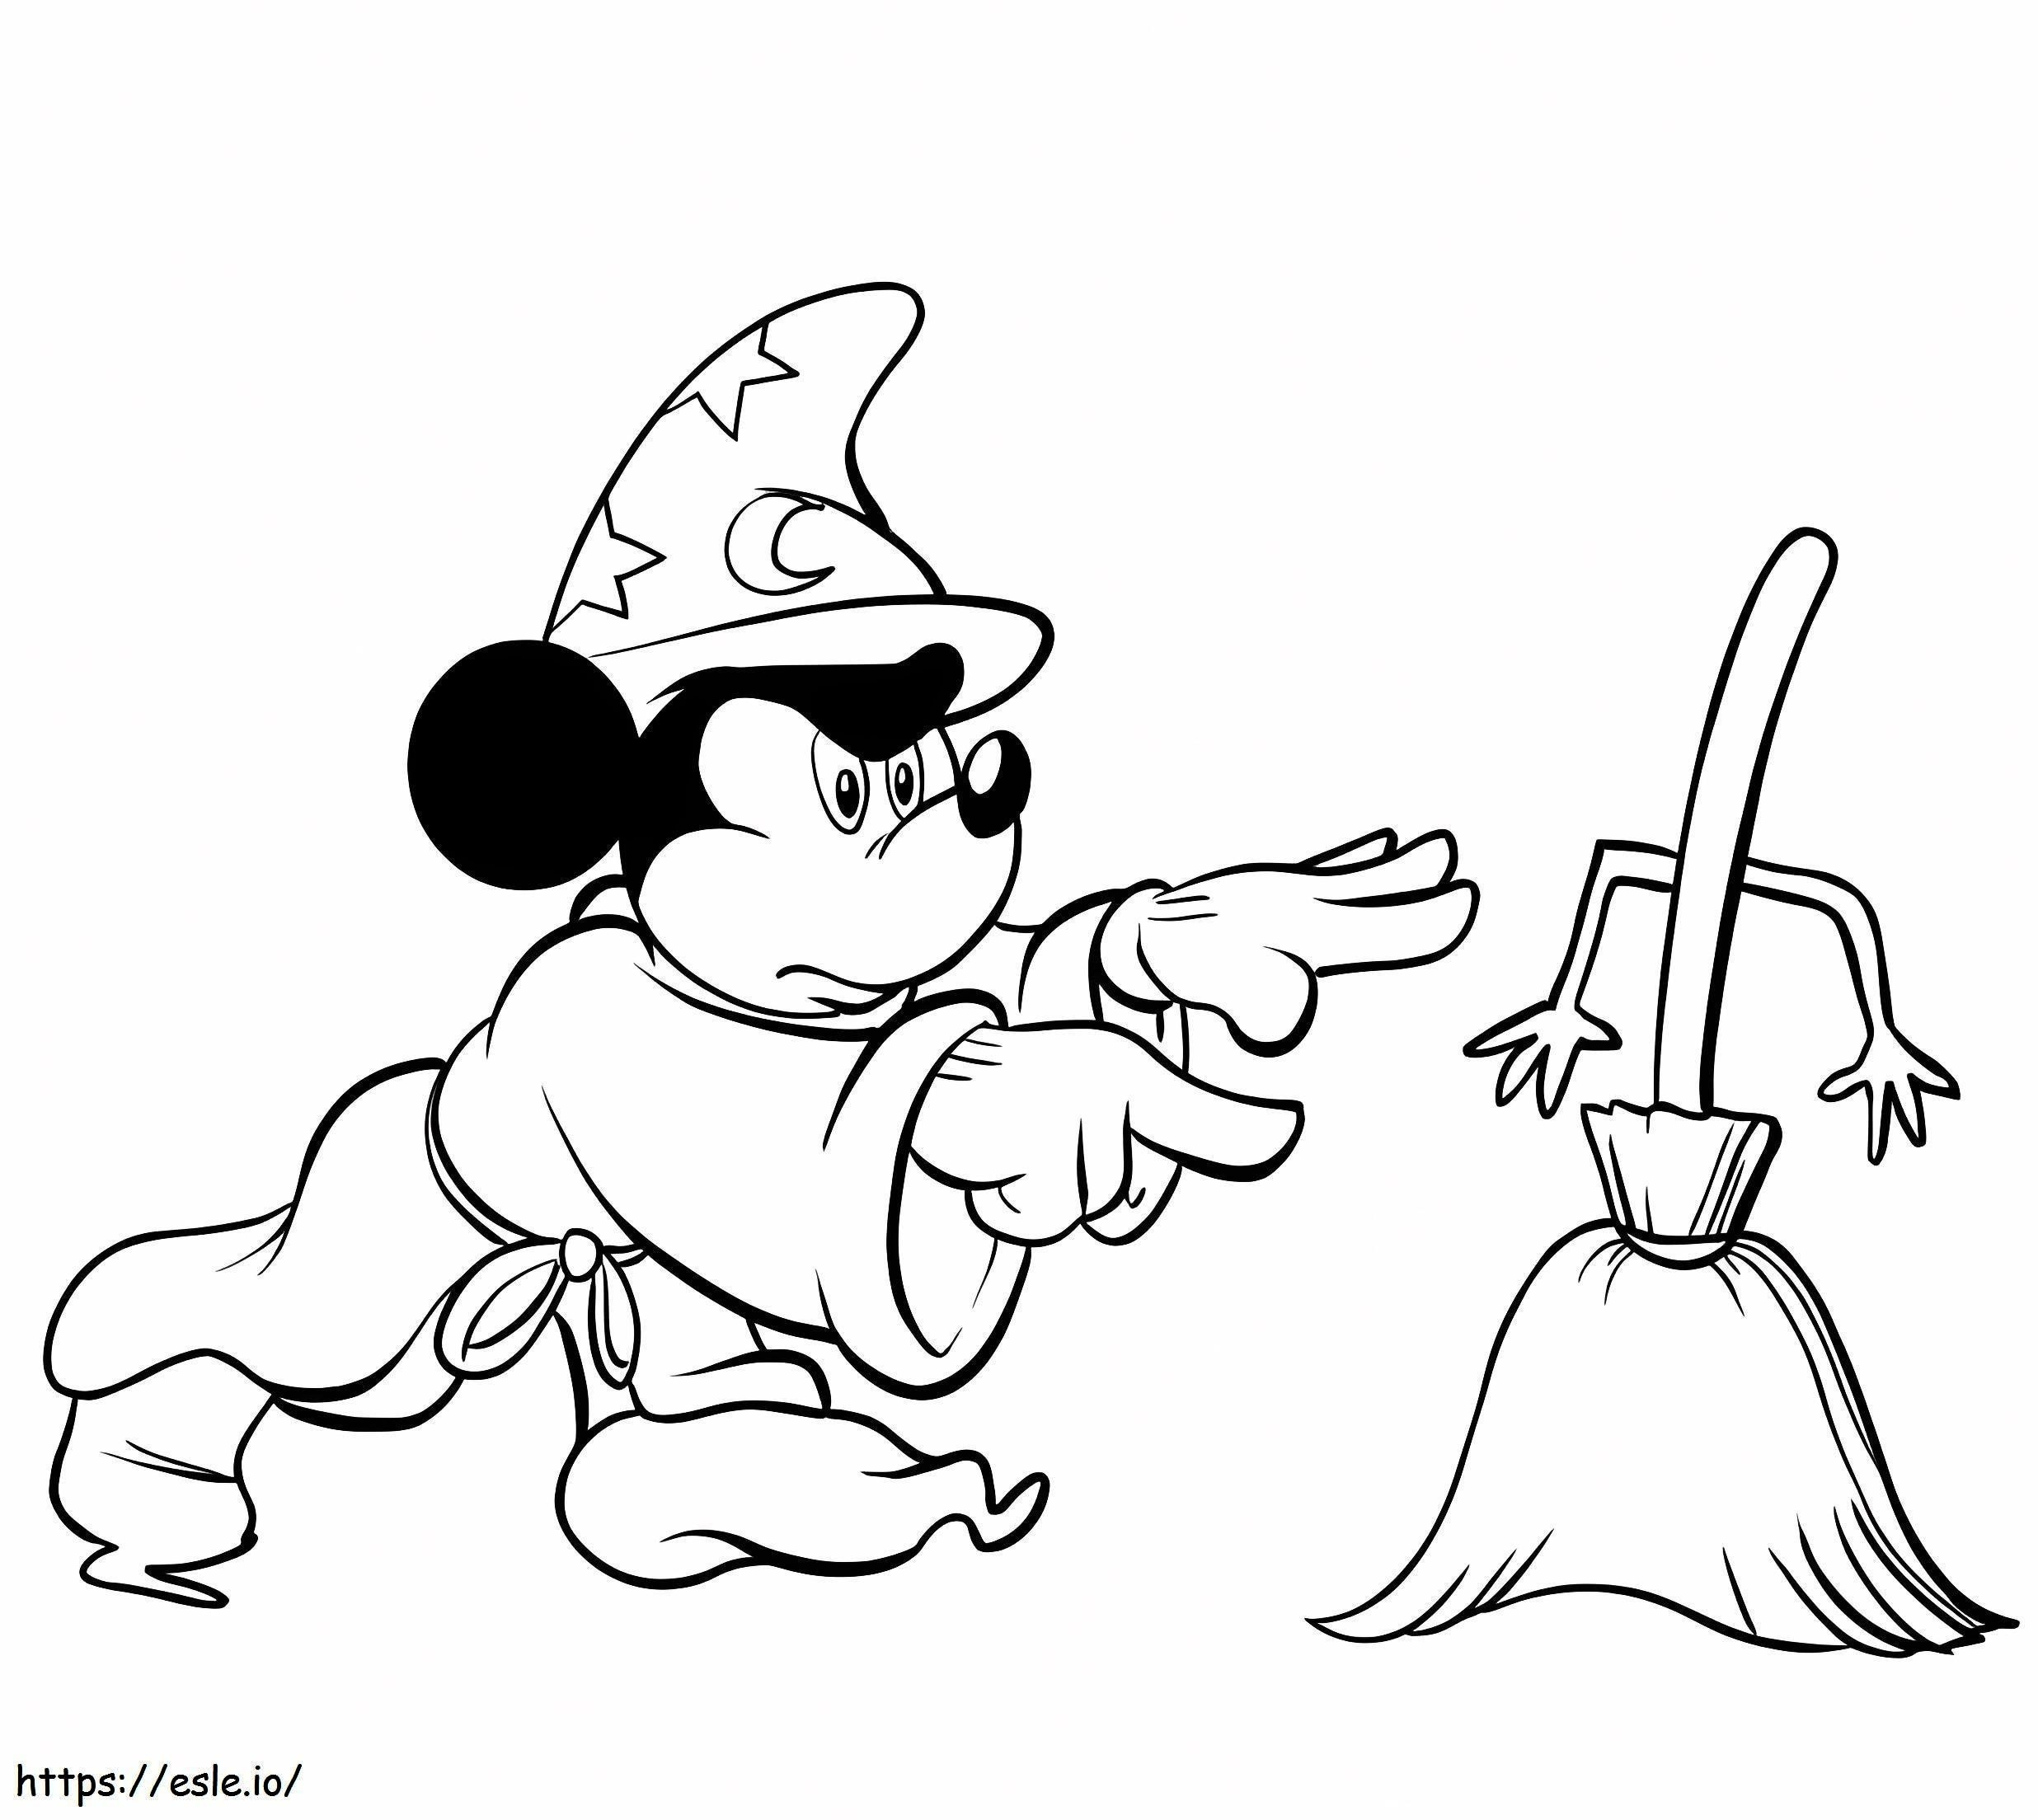 Mickey Mouse com vassoura mágica para colorir